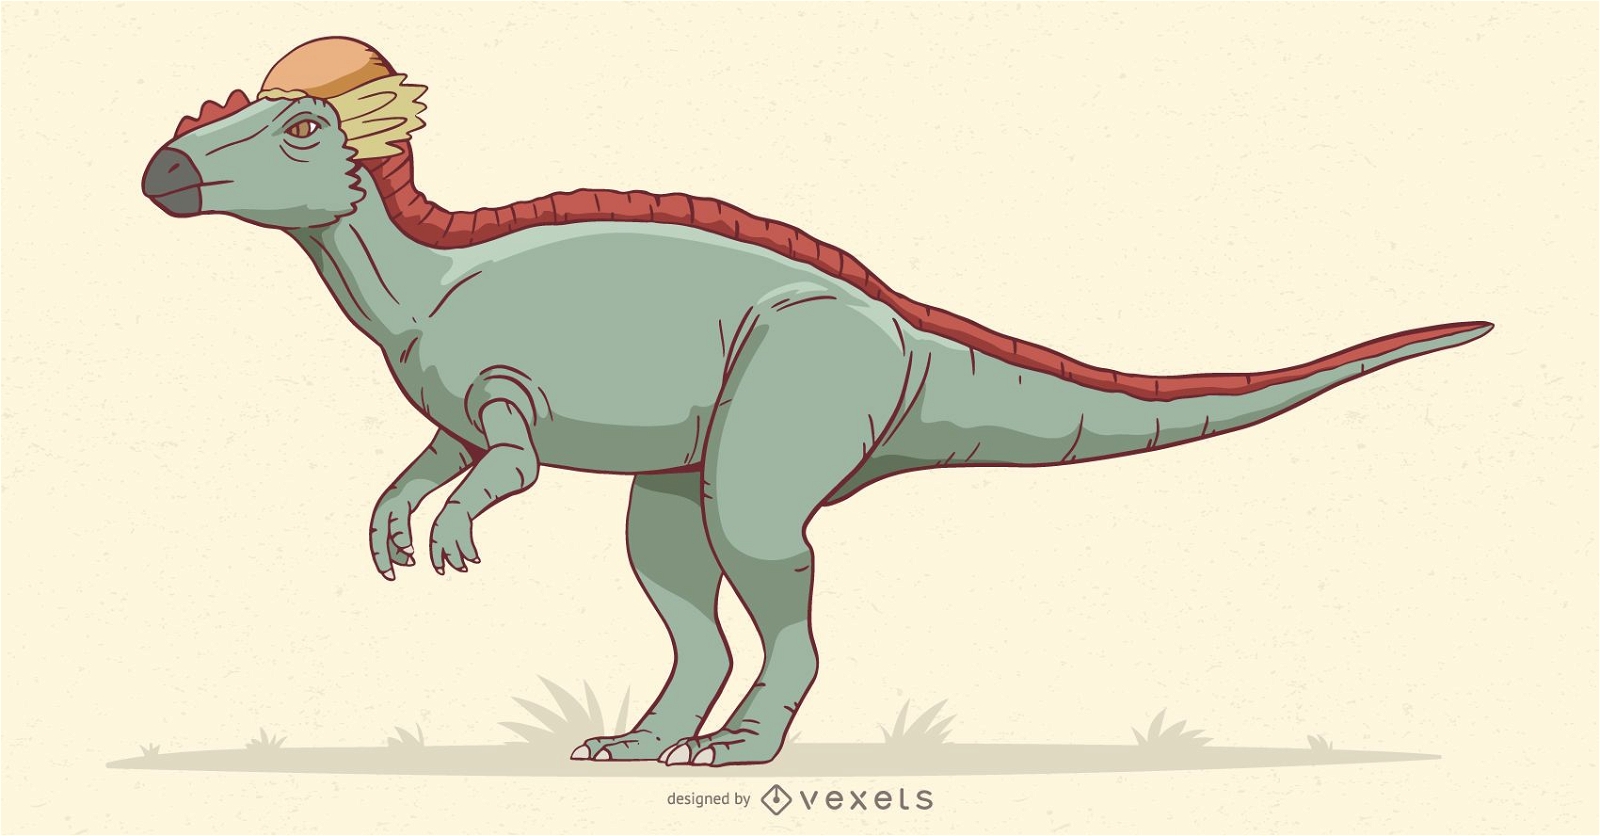 Stegoceras dinosaur illustration